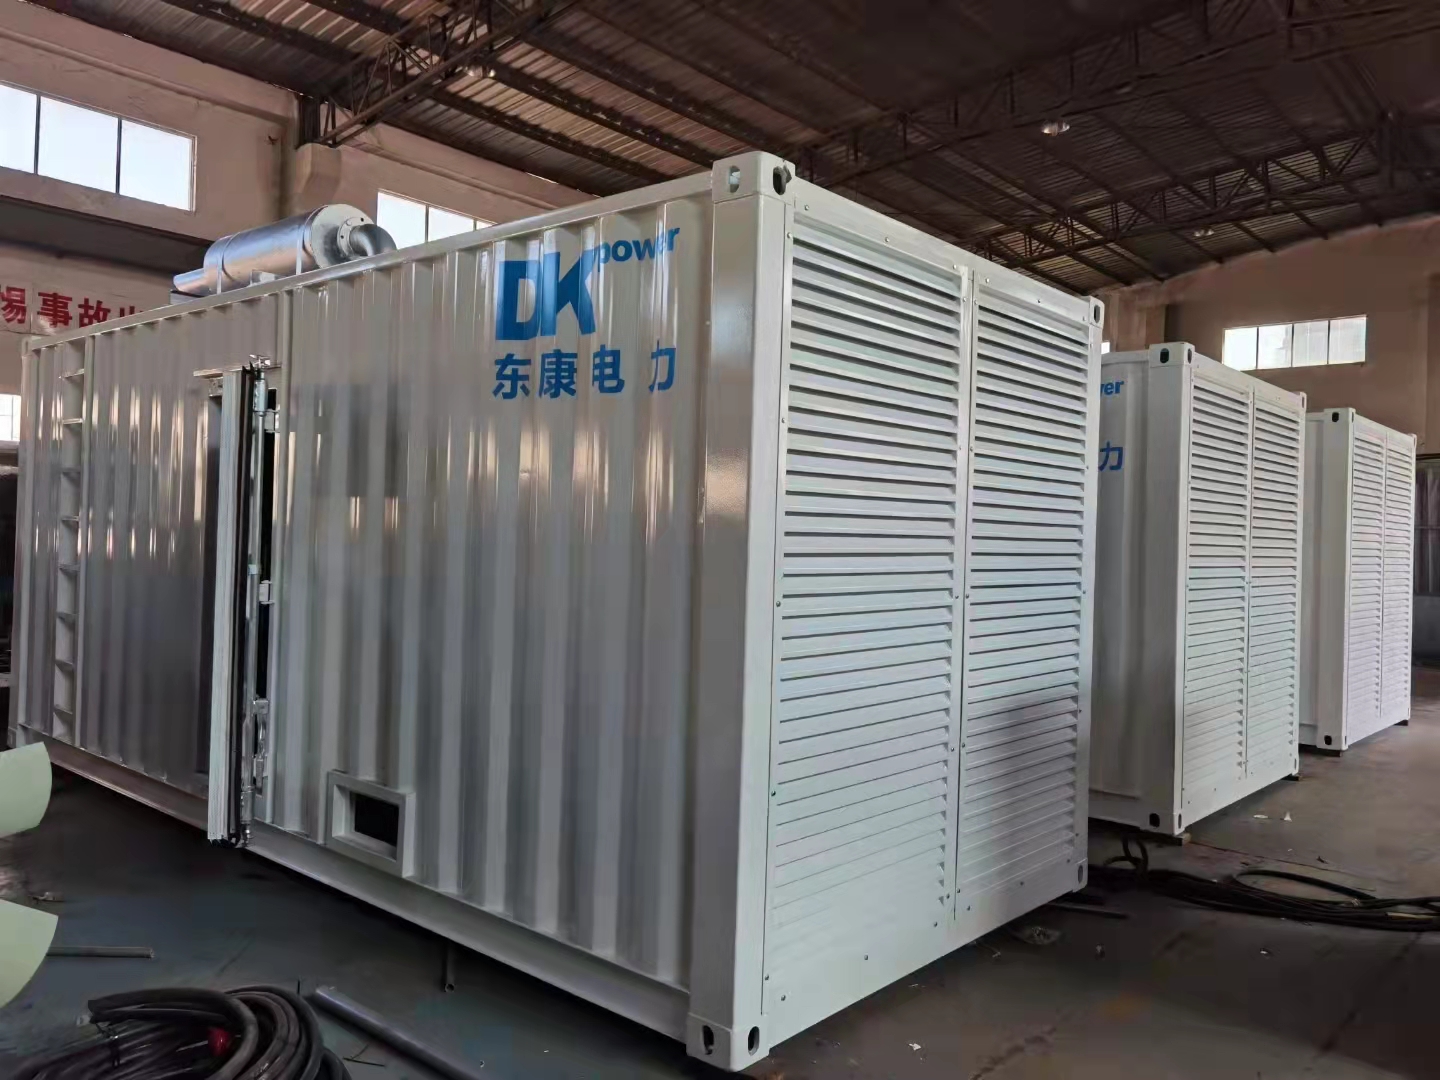 4台750KVA静音集装箱型发电机组出厂发往大鹏隔离酒店